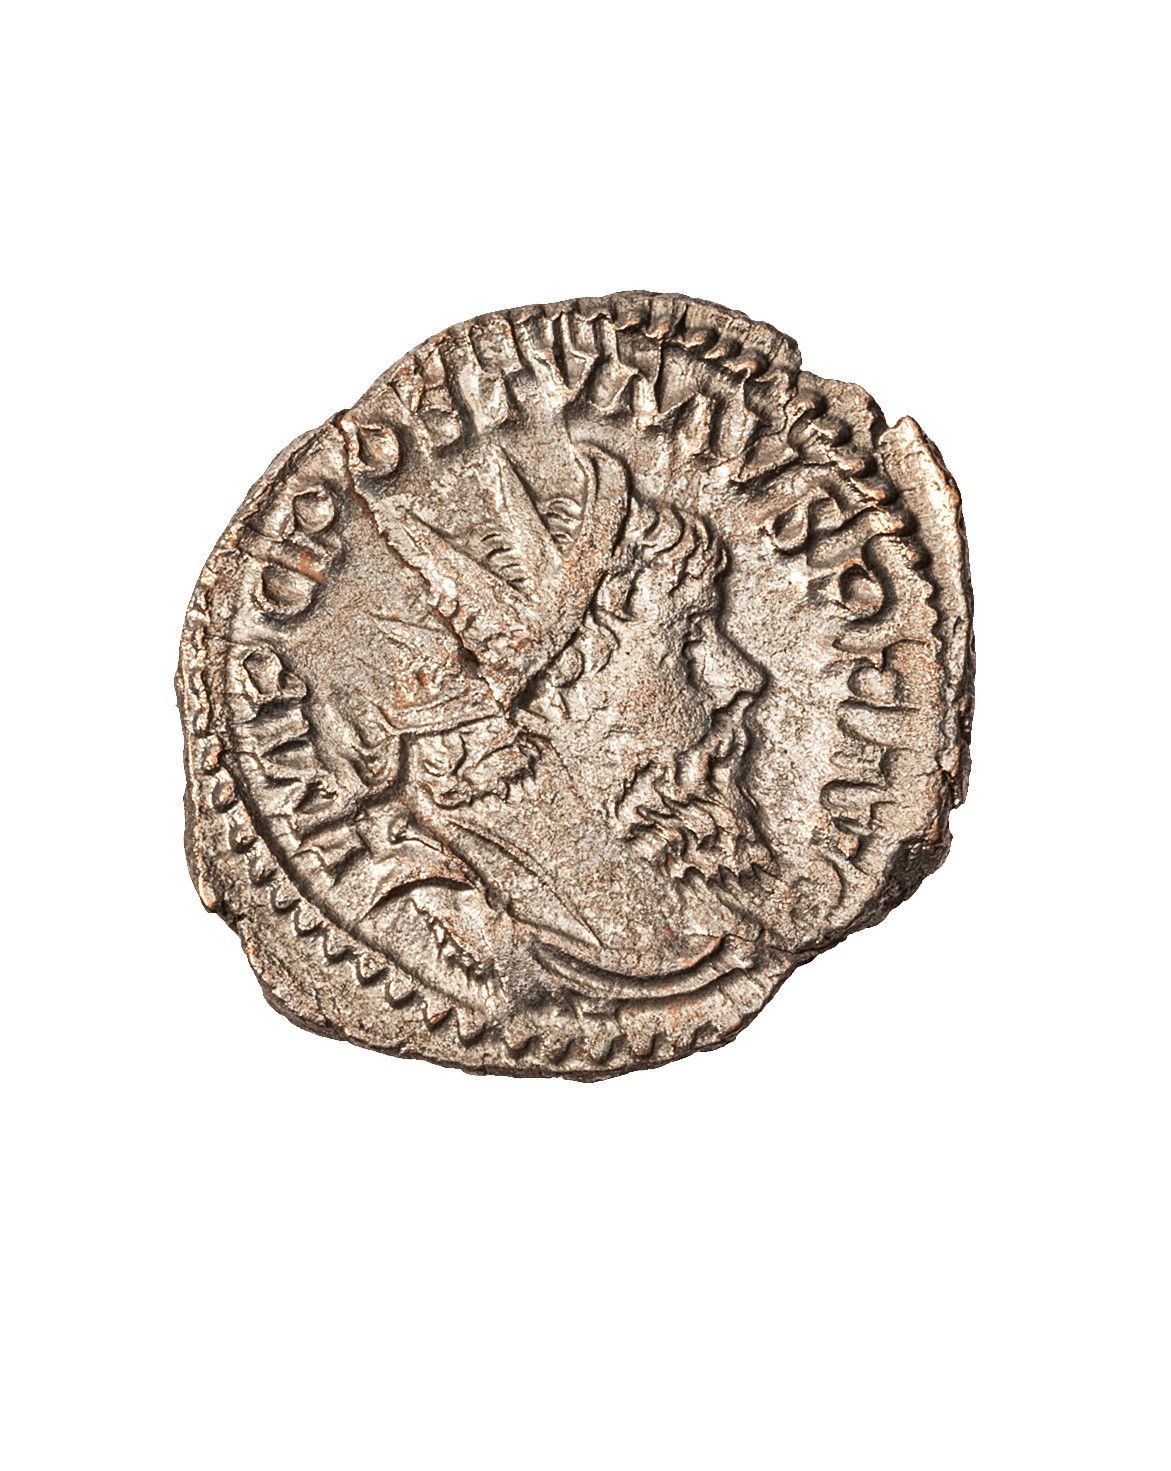 Null POSTUMA 

Antoniniano colpito a Treviri nel 268

R/ Mazza, arco e faretra 
&hellip;